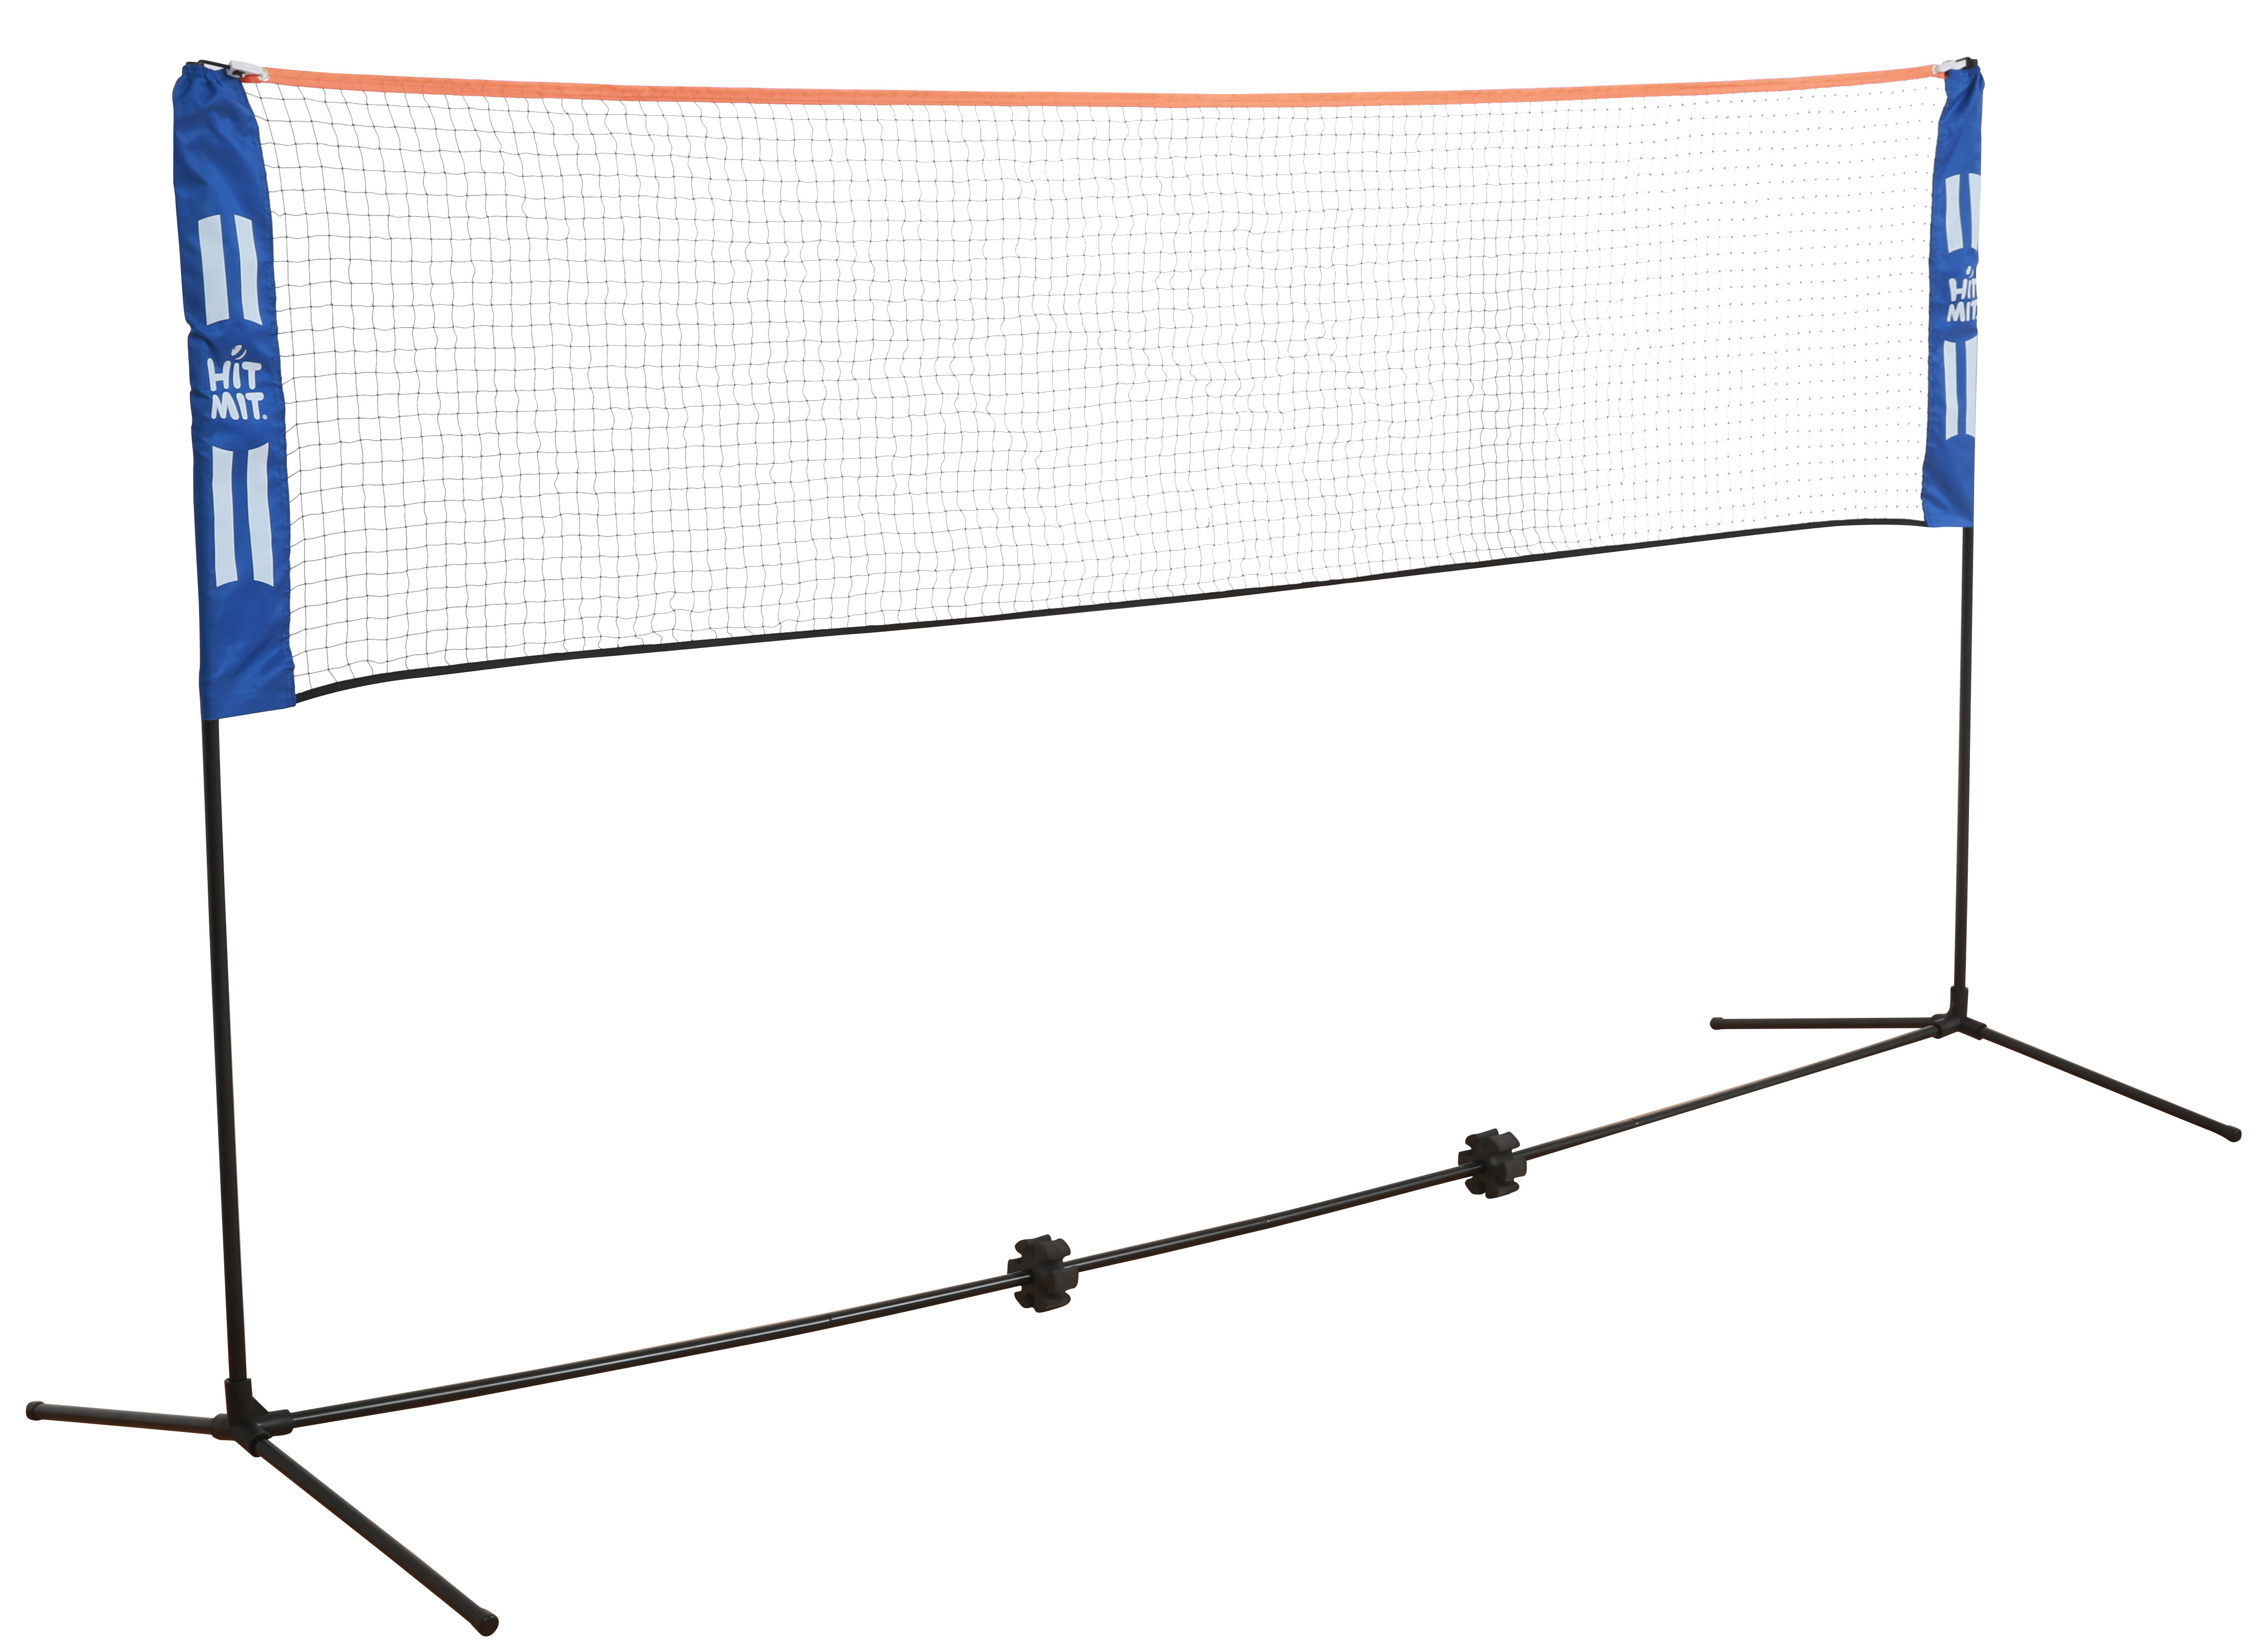 slecht werkelijk verkoper HIT MIT 17ft Badminton Net Set - Adjustable Height Portable Net for  Pickleball, Volleyball, Soccer, Tennis, Lawn Tennis - Outdoor Game and  Backyard Net & Reviews | Wayfair